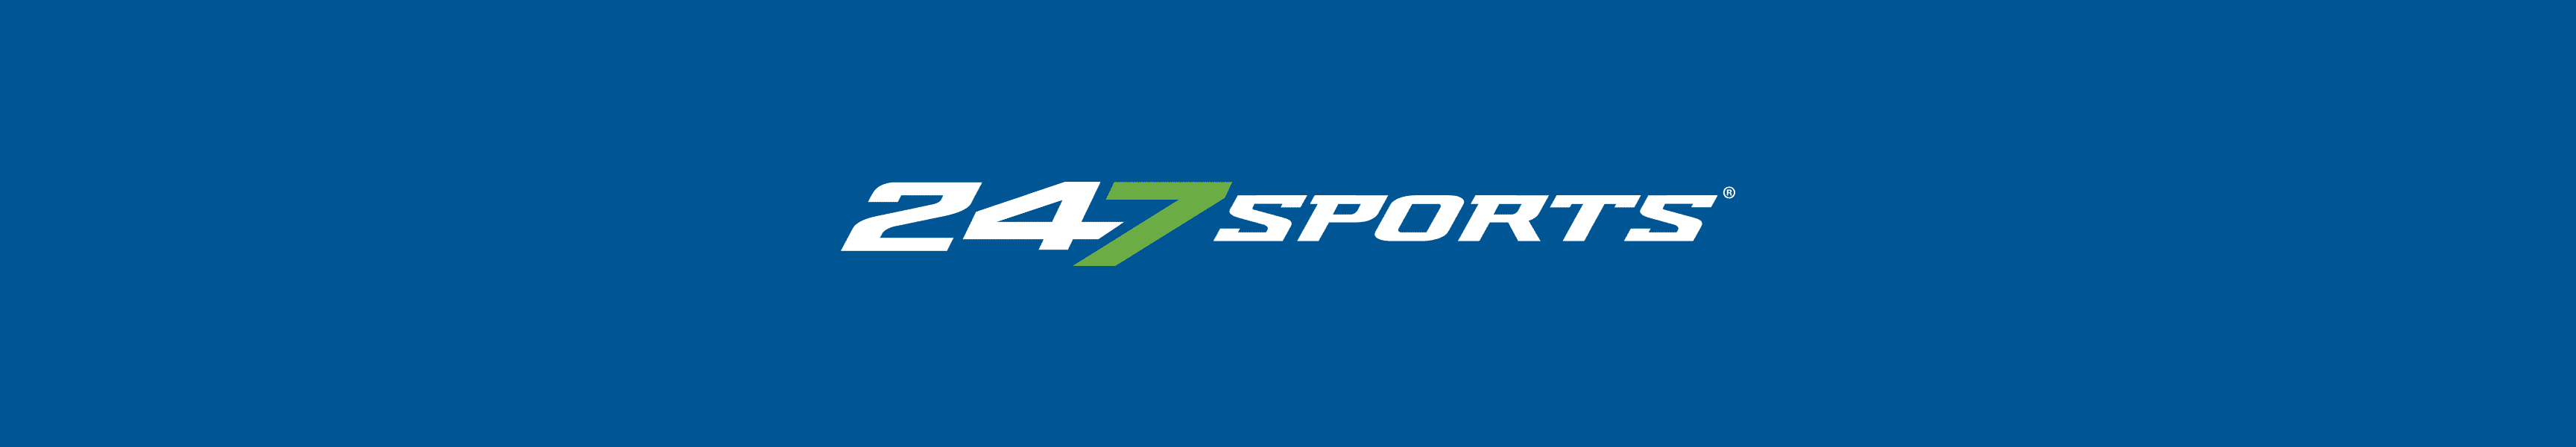 247 deportes